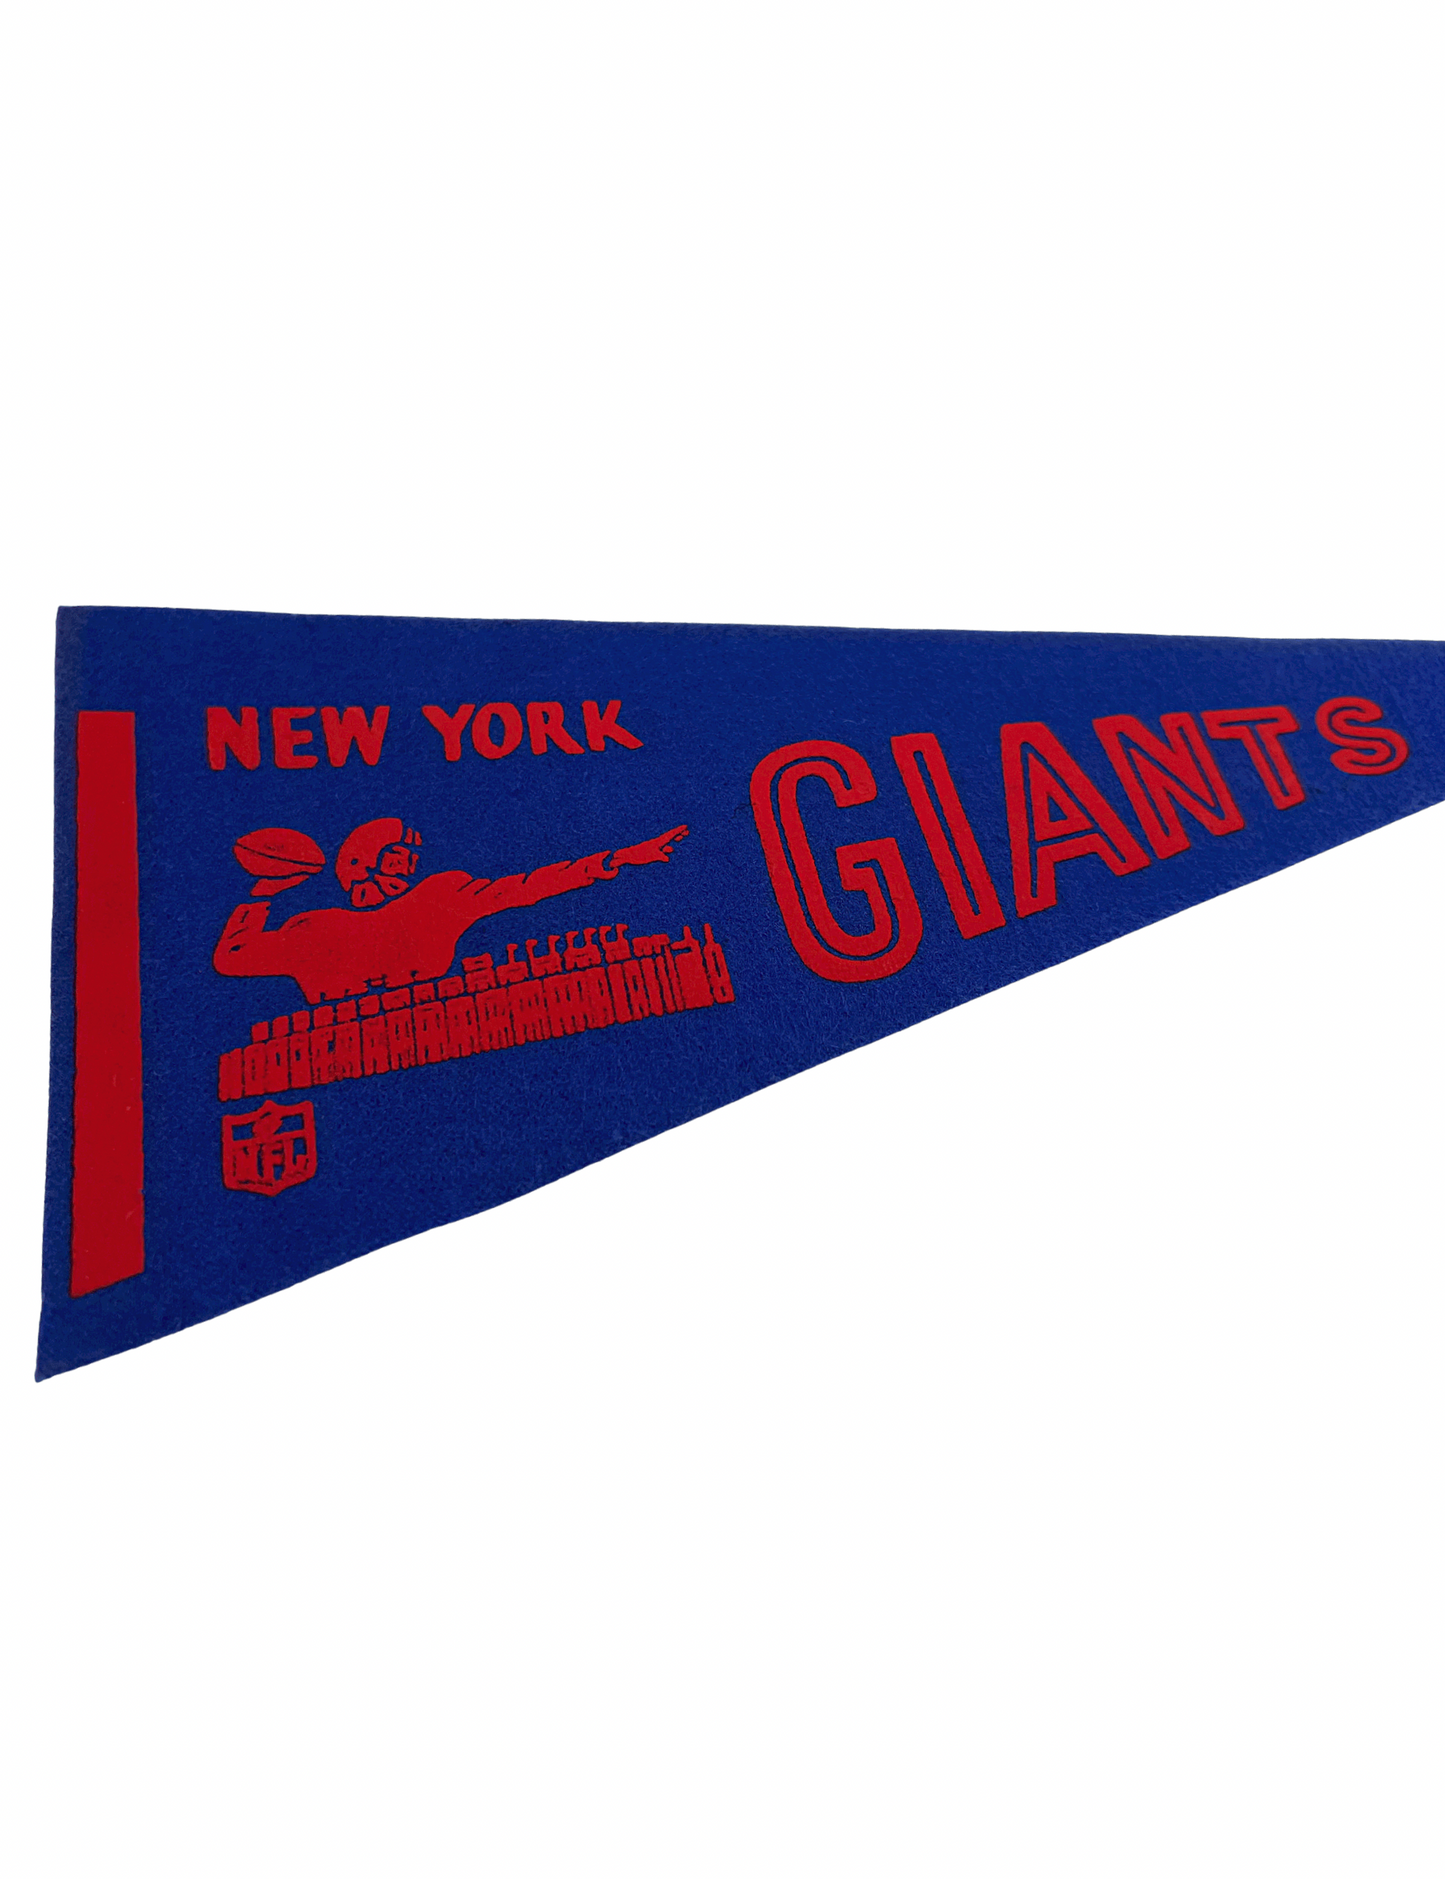 Vintage New York Giants Mini Football Felt Pennant 4.25” x 9”